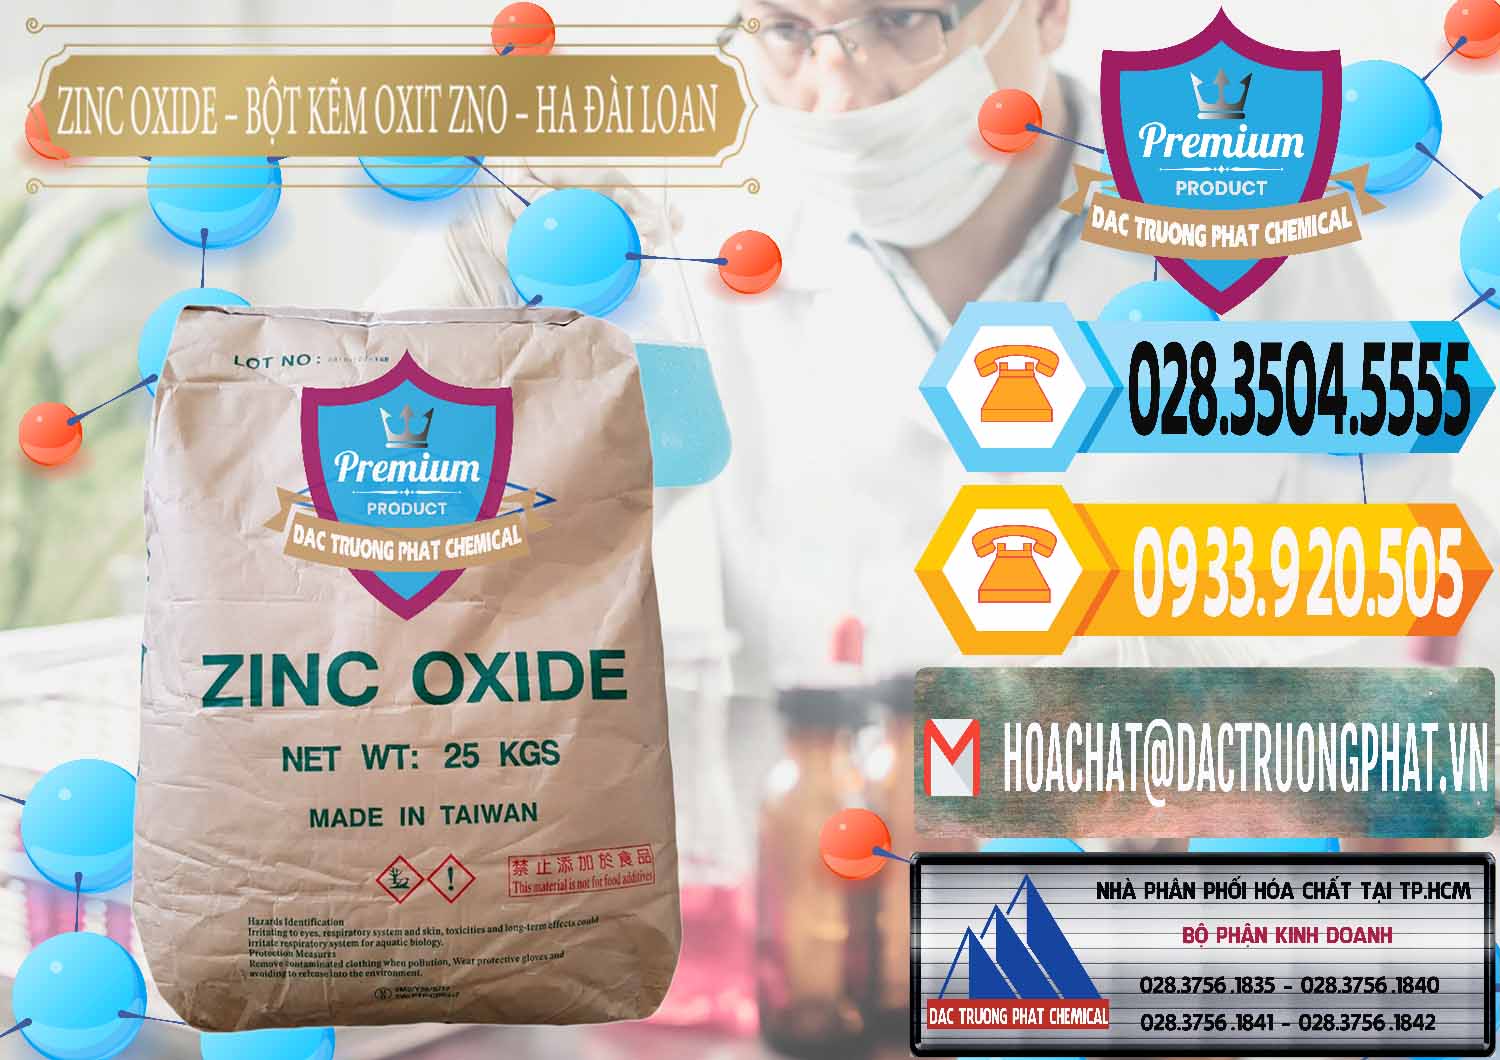 Nơi chuyên phân phối - bán Zinc Oxide - Bột Kẽm Oxit ZNO HA Đài Loan Taiwan - 0180 - Nơi chuyên kinh doanh - phân phối hóa chất tại TP.HCM - hoachattayrua.net